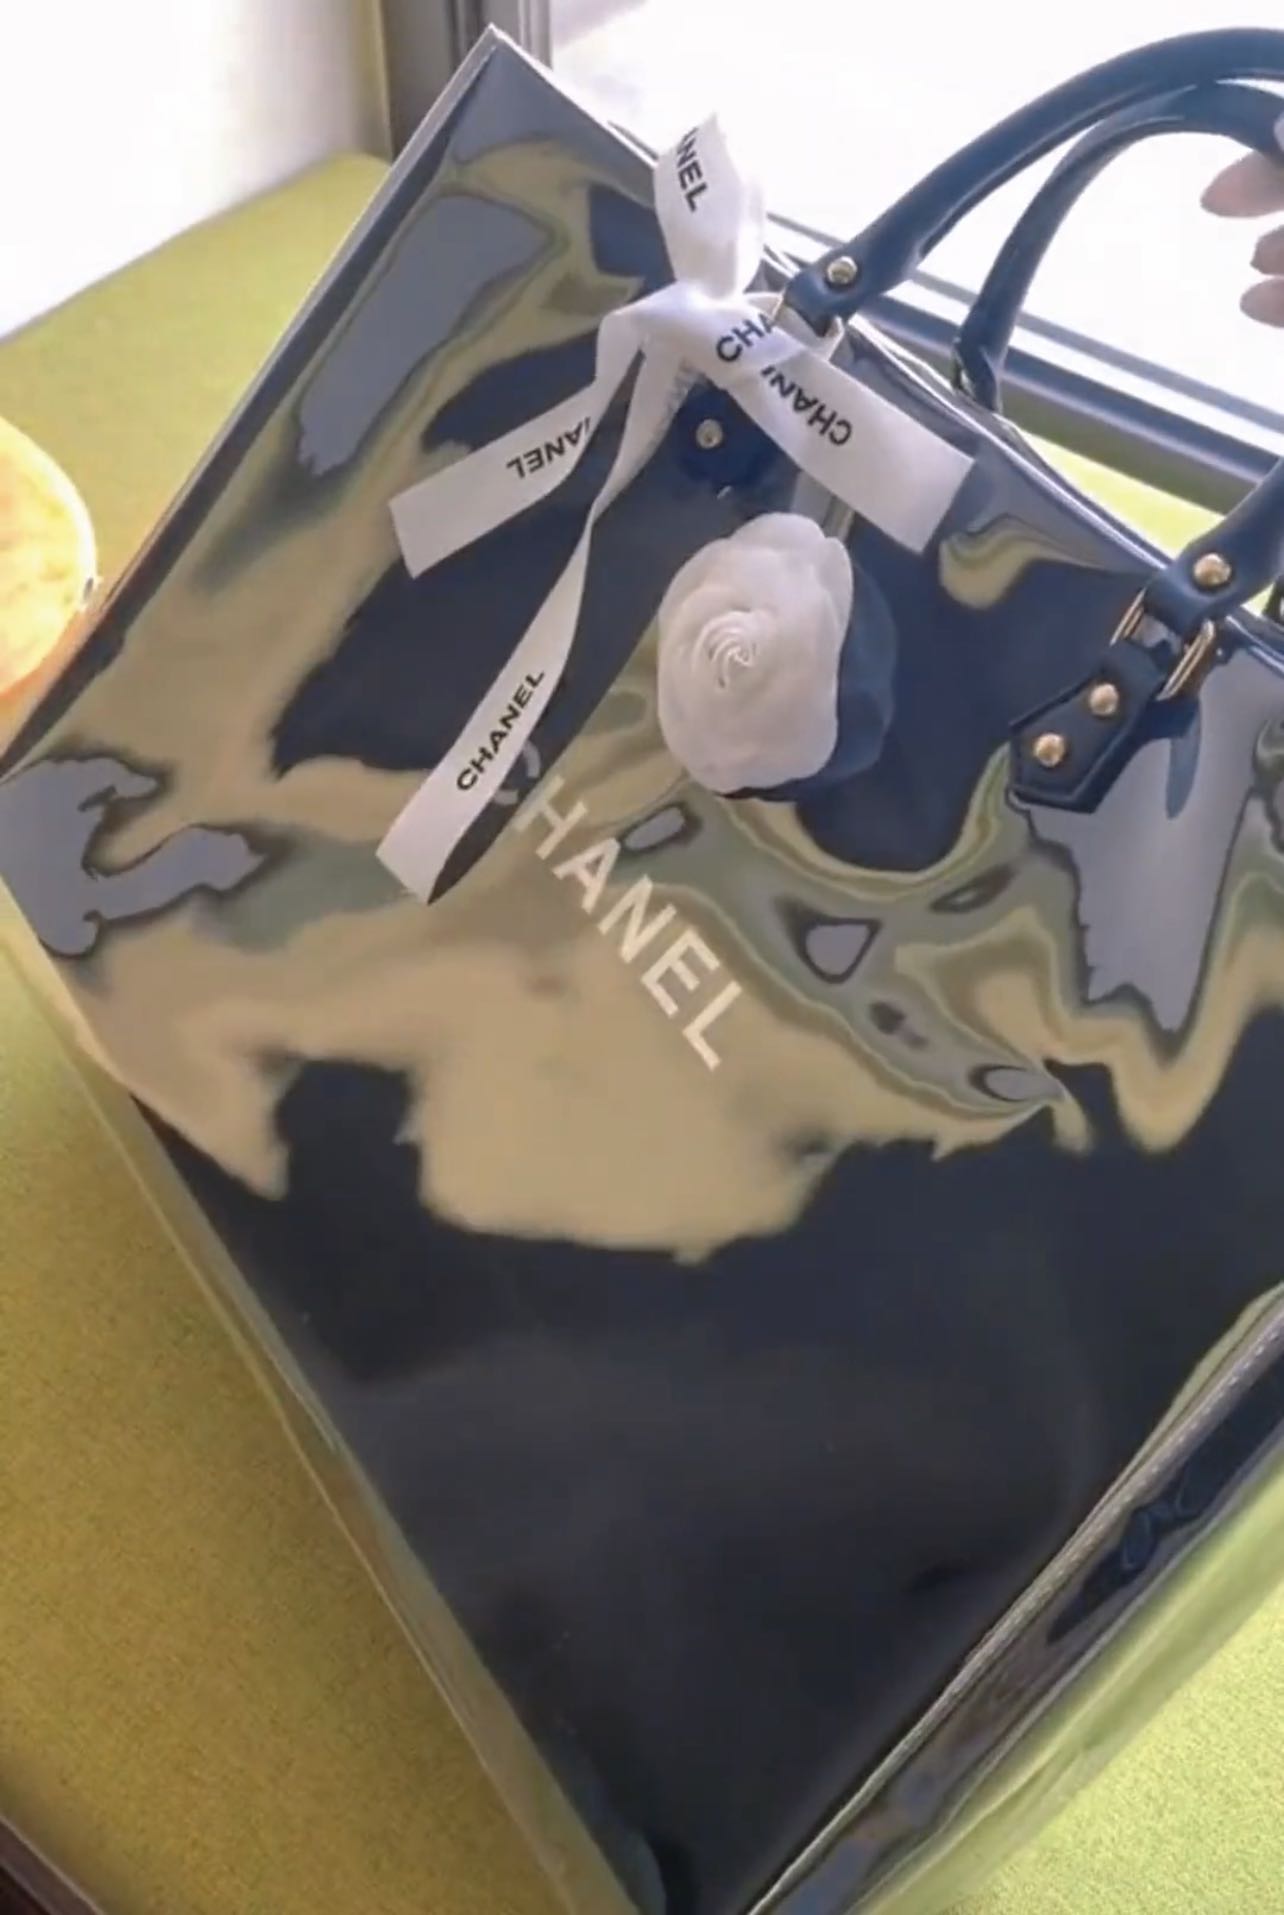 lv shopping bag converter kit clear